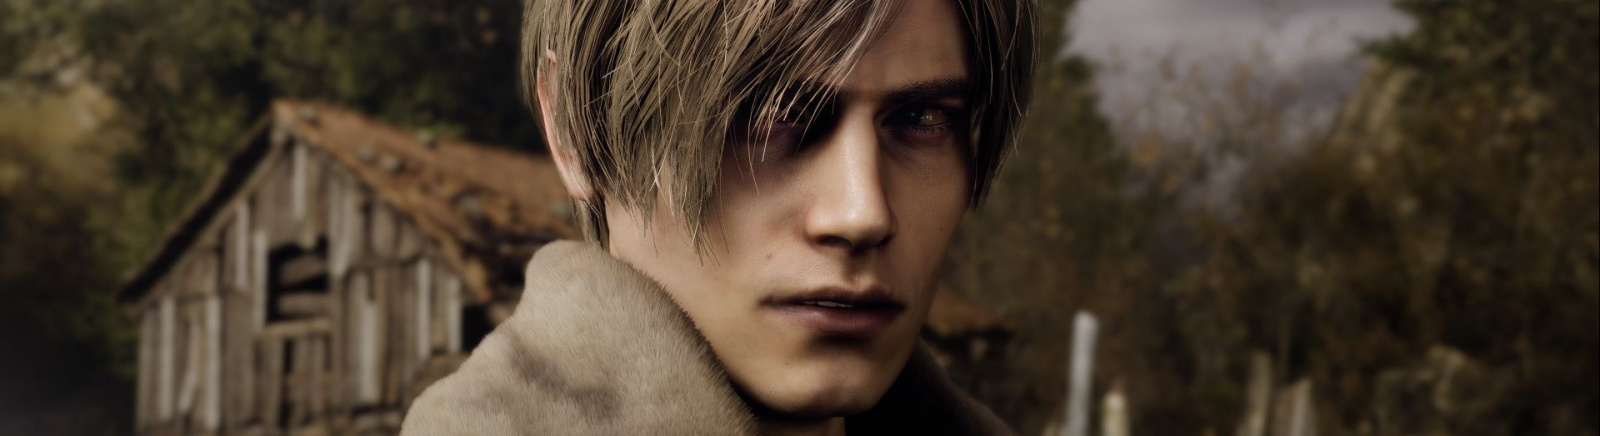 Resident Evil 4 Remake - что это за игра, когда выйдет, трейлер и видео, системные требования, изображения, цена, похожие игры